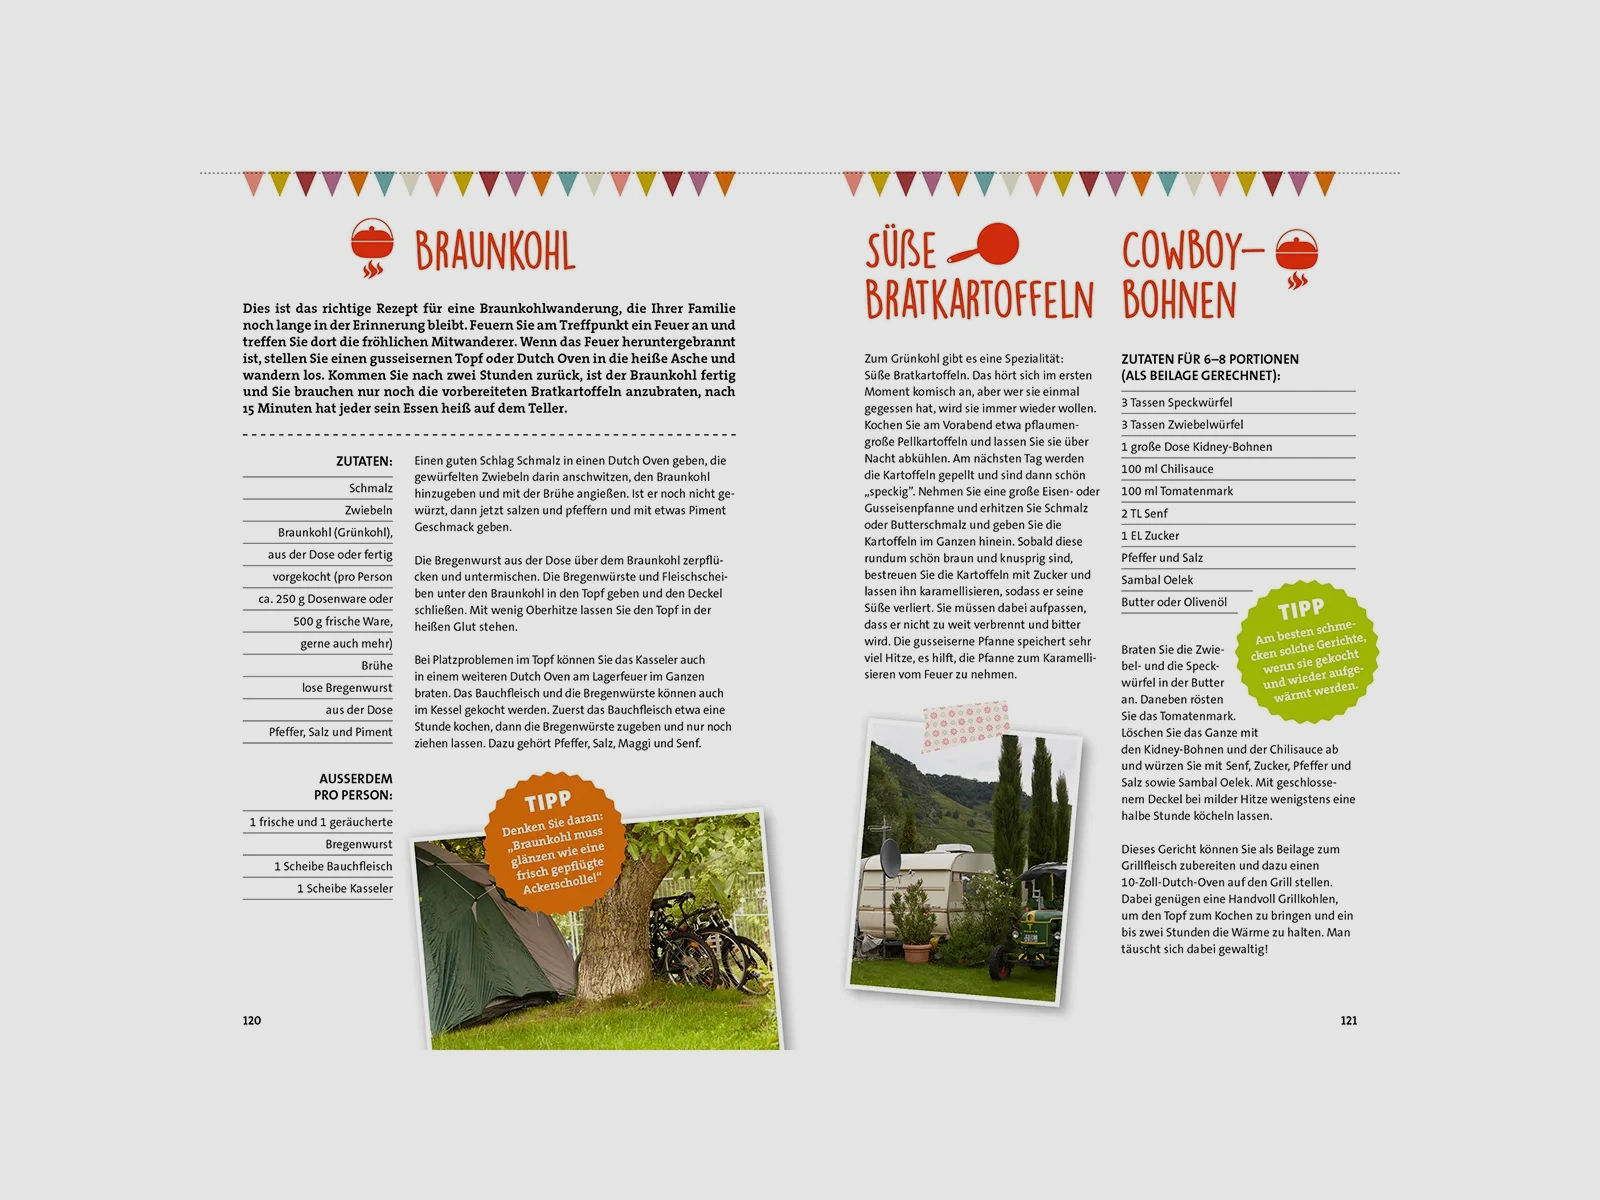 ADAC Das Camping-Kochbuch